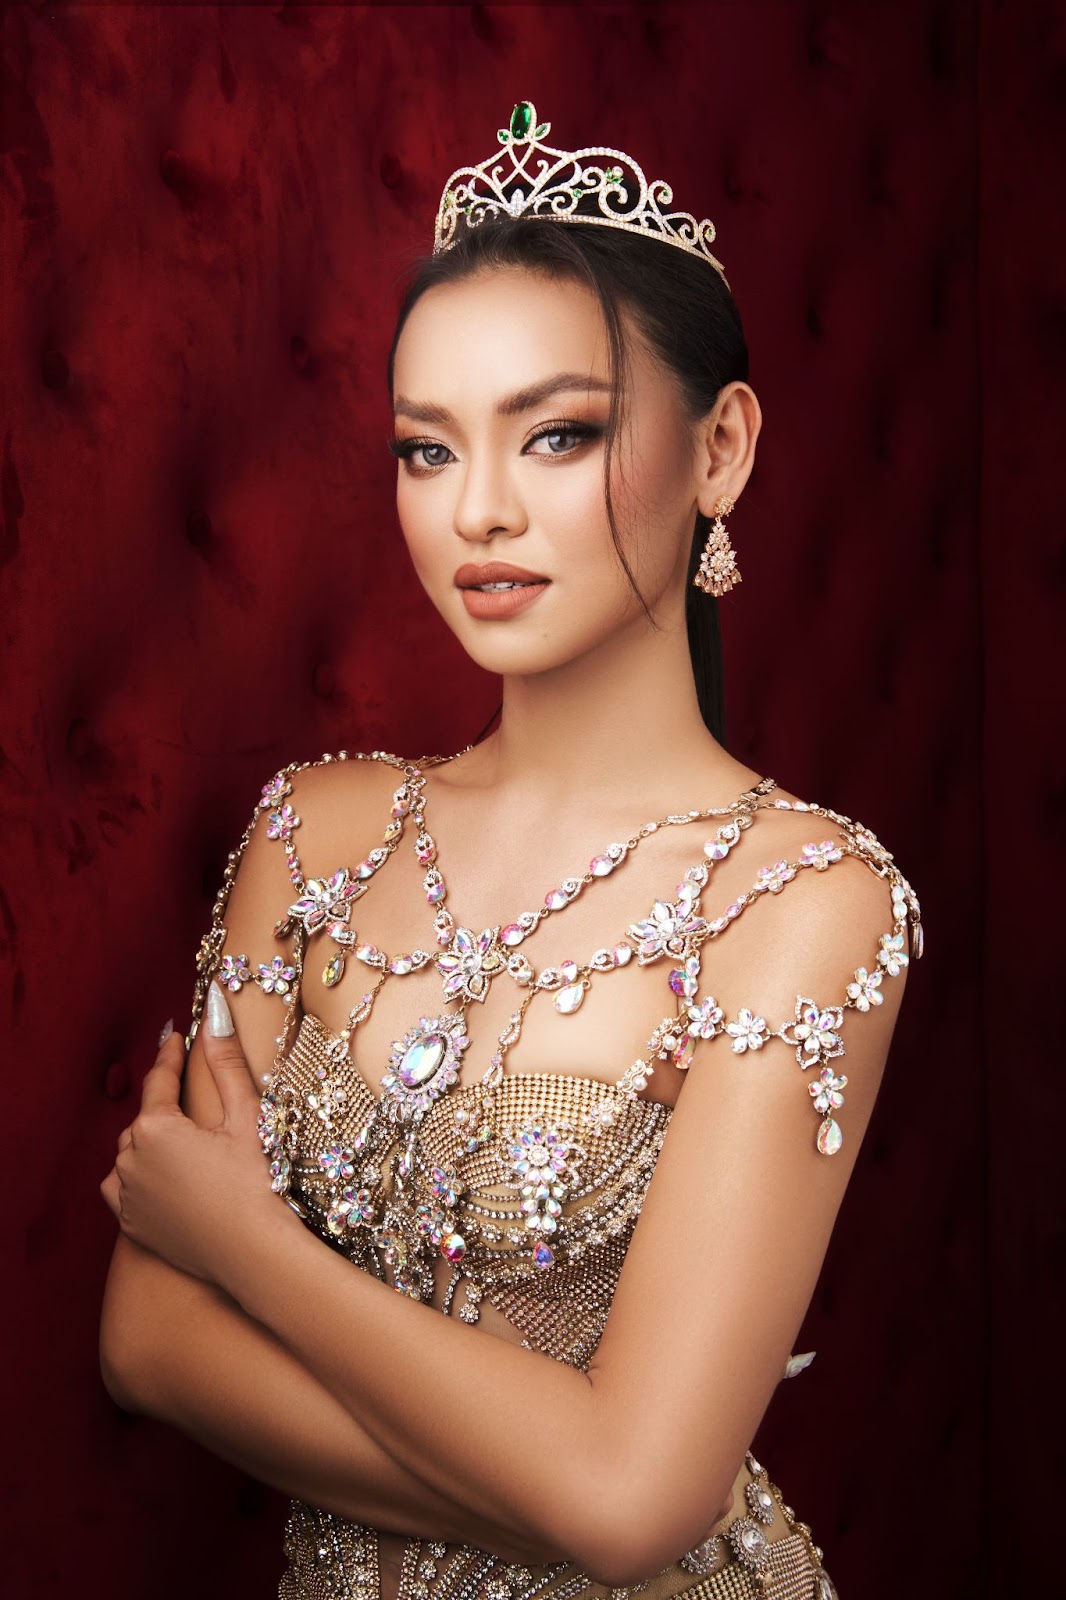 Mai Ngô đằm thắm đậm chất Thái Lan, sẵn sàng “chiến” tại Hoa hậu chuyển giới Việt Nam - ảnh 7